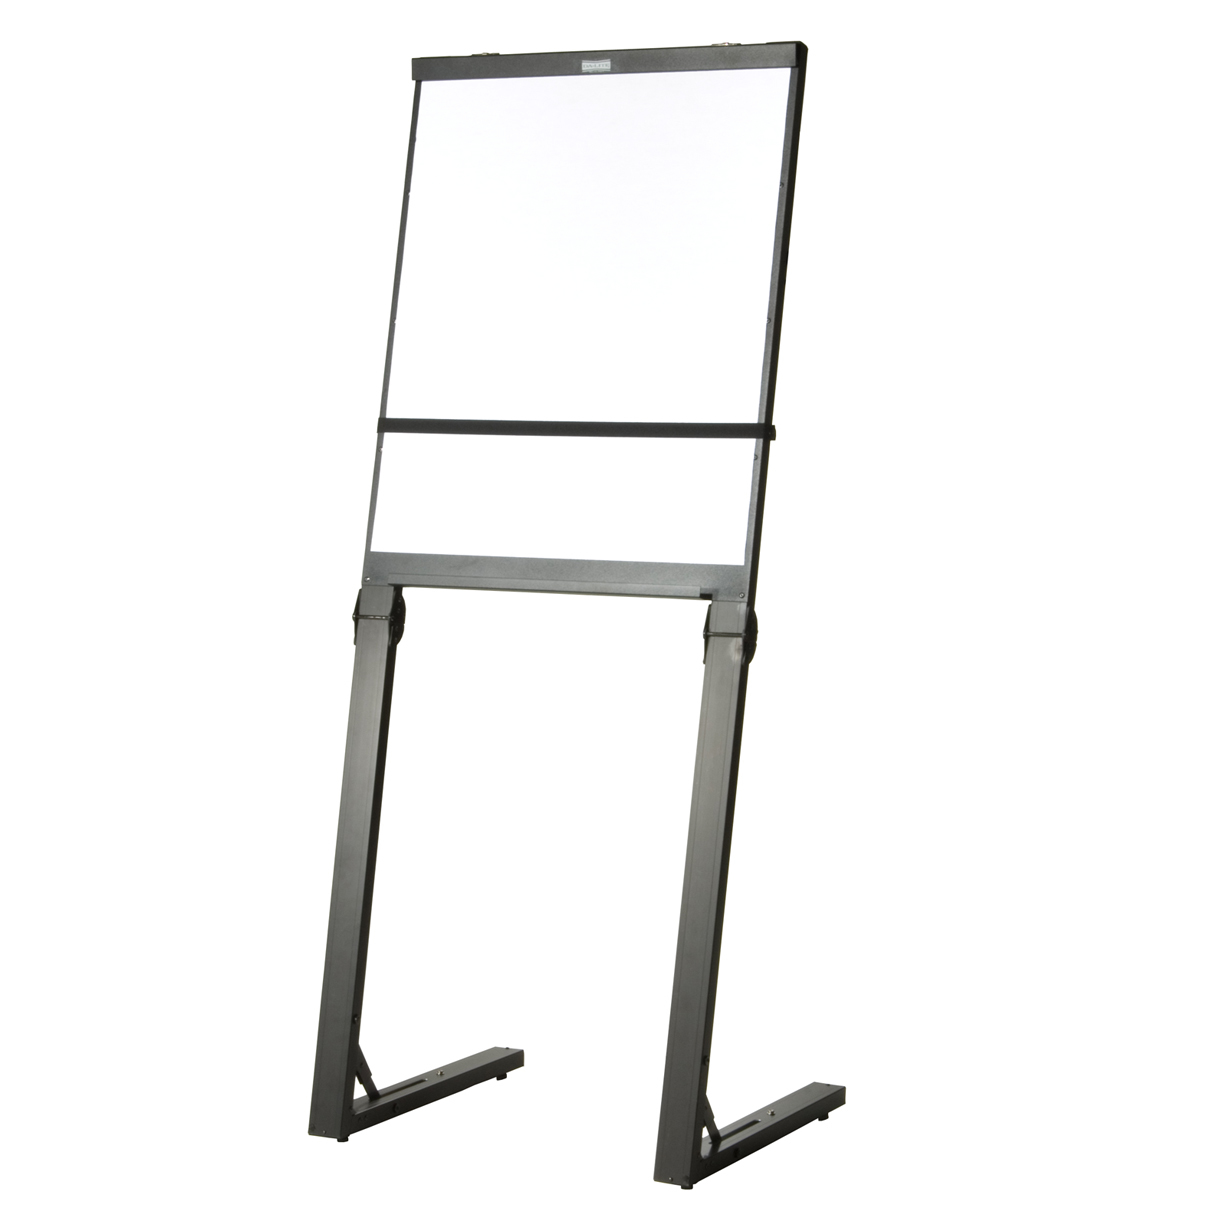 Da-Lite Designer - Easel - floor-standing - for 27 in x 34.02 in - enamel steel - magnetic - black